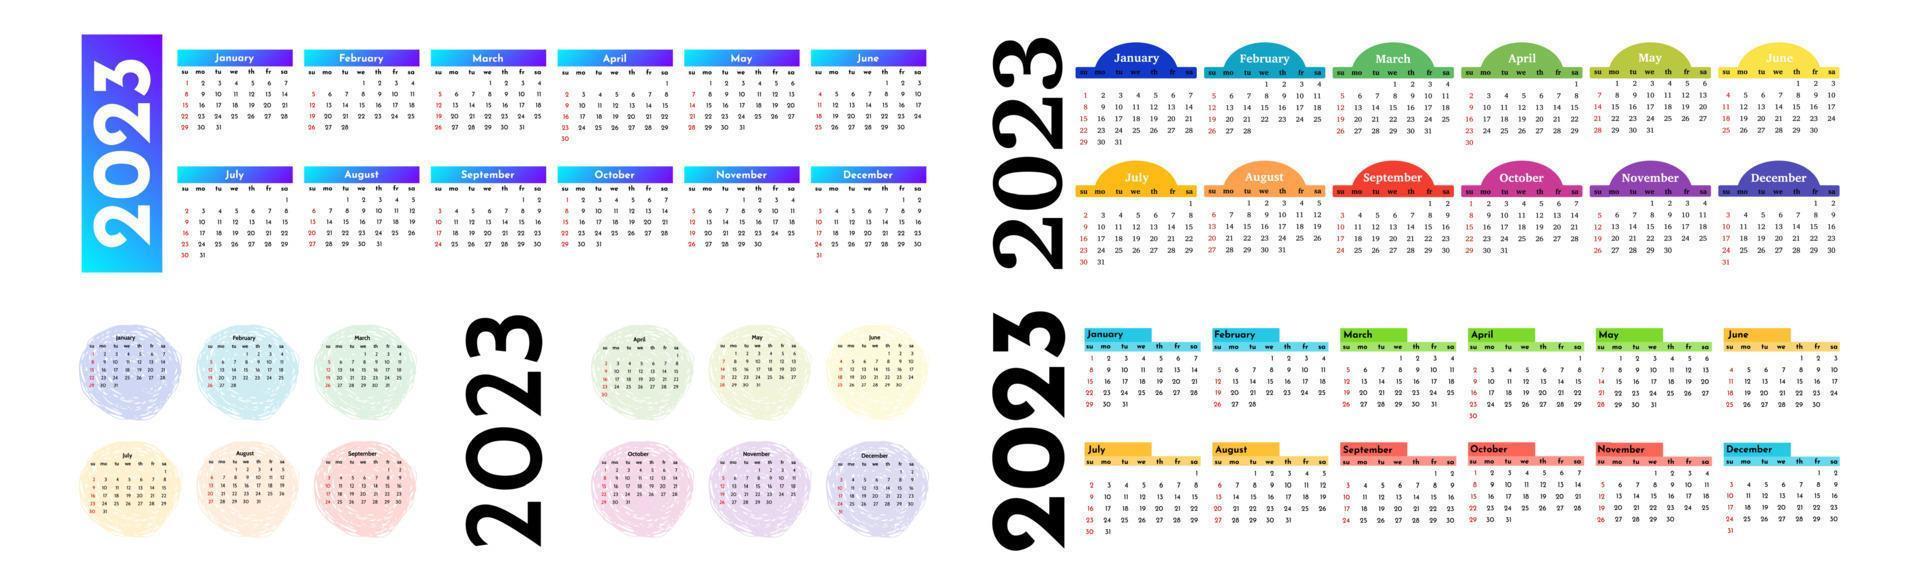 kalender för 2023 isolerat på en vit bakgrund vektor